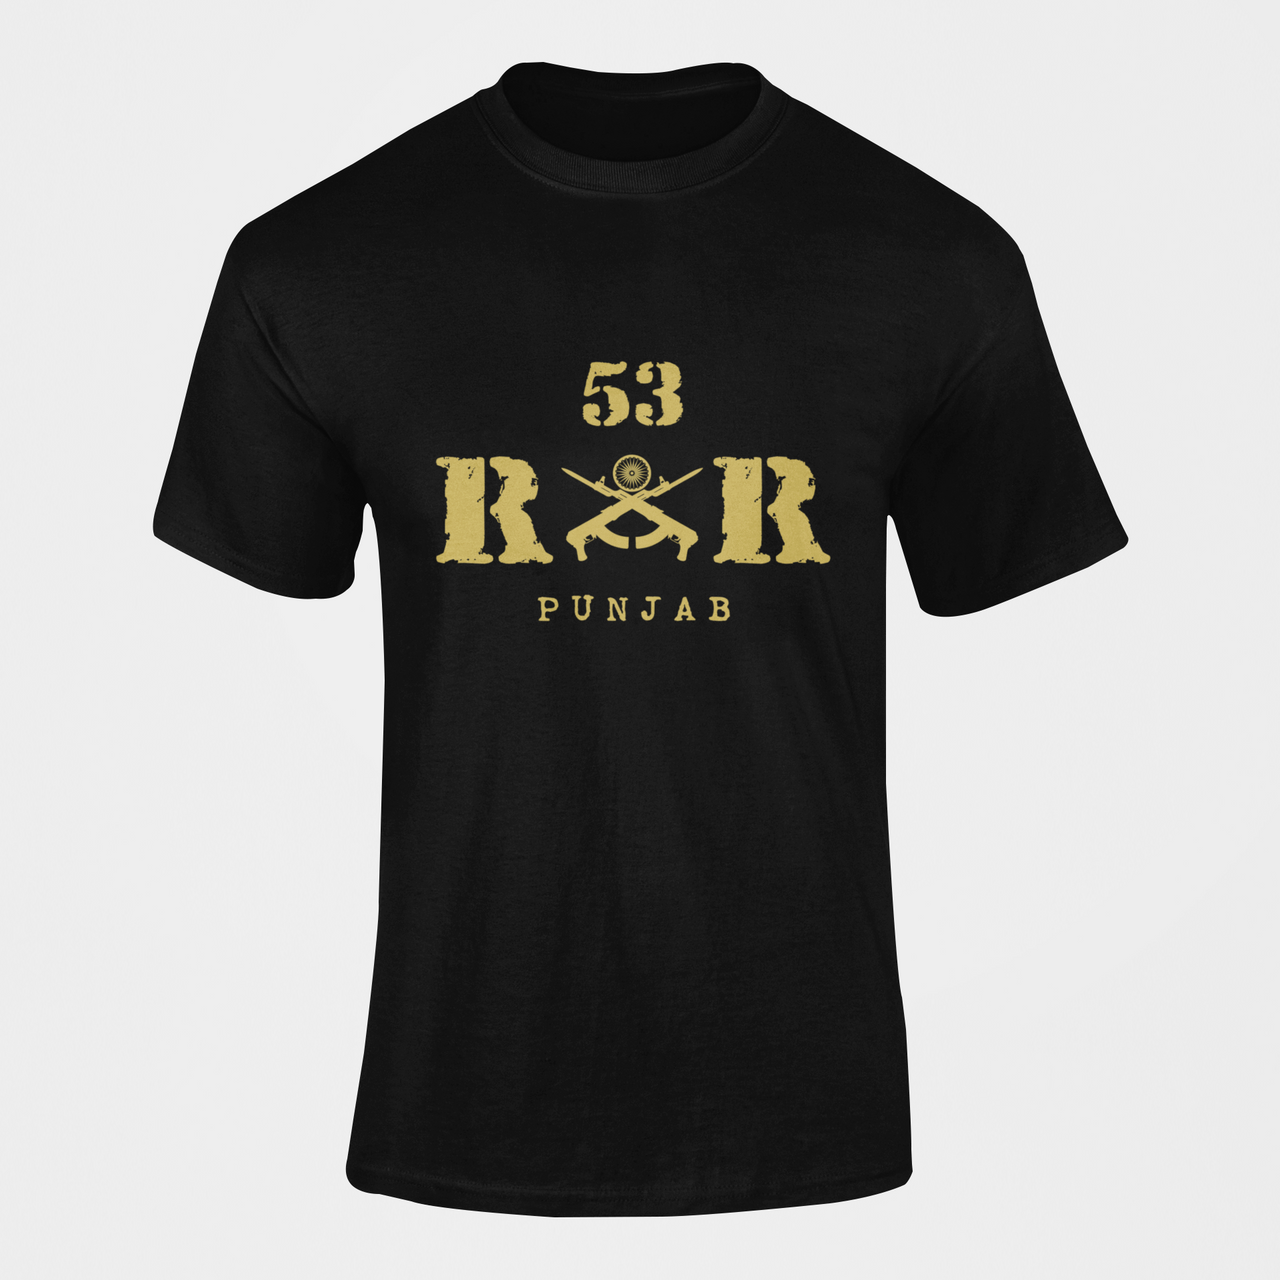 Rashtriya Rifles T-shirt - 53 RR Punjab (Men)